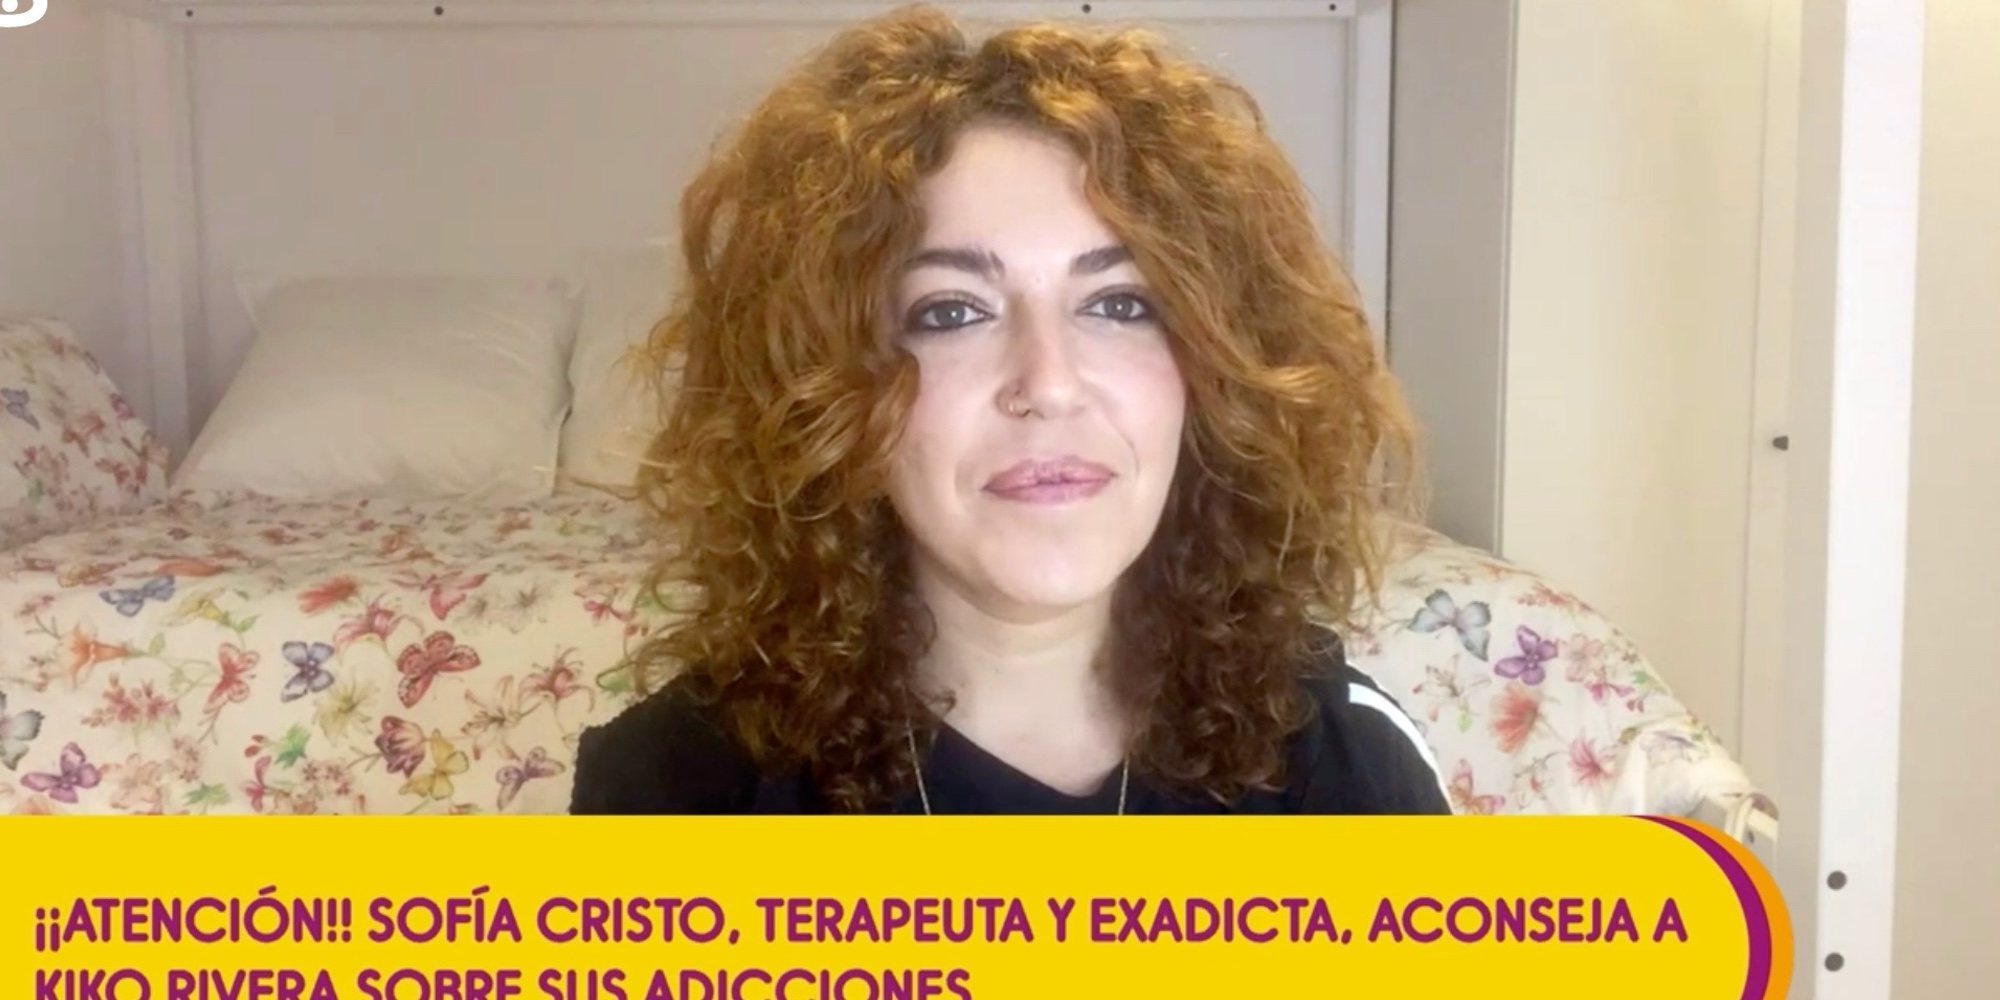 Sofía Cristo aconseja a Kiko Rivera: "Si quiere tener calidad de vida debe recuperarse con un buen tratamiento"